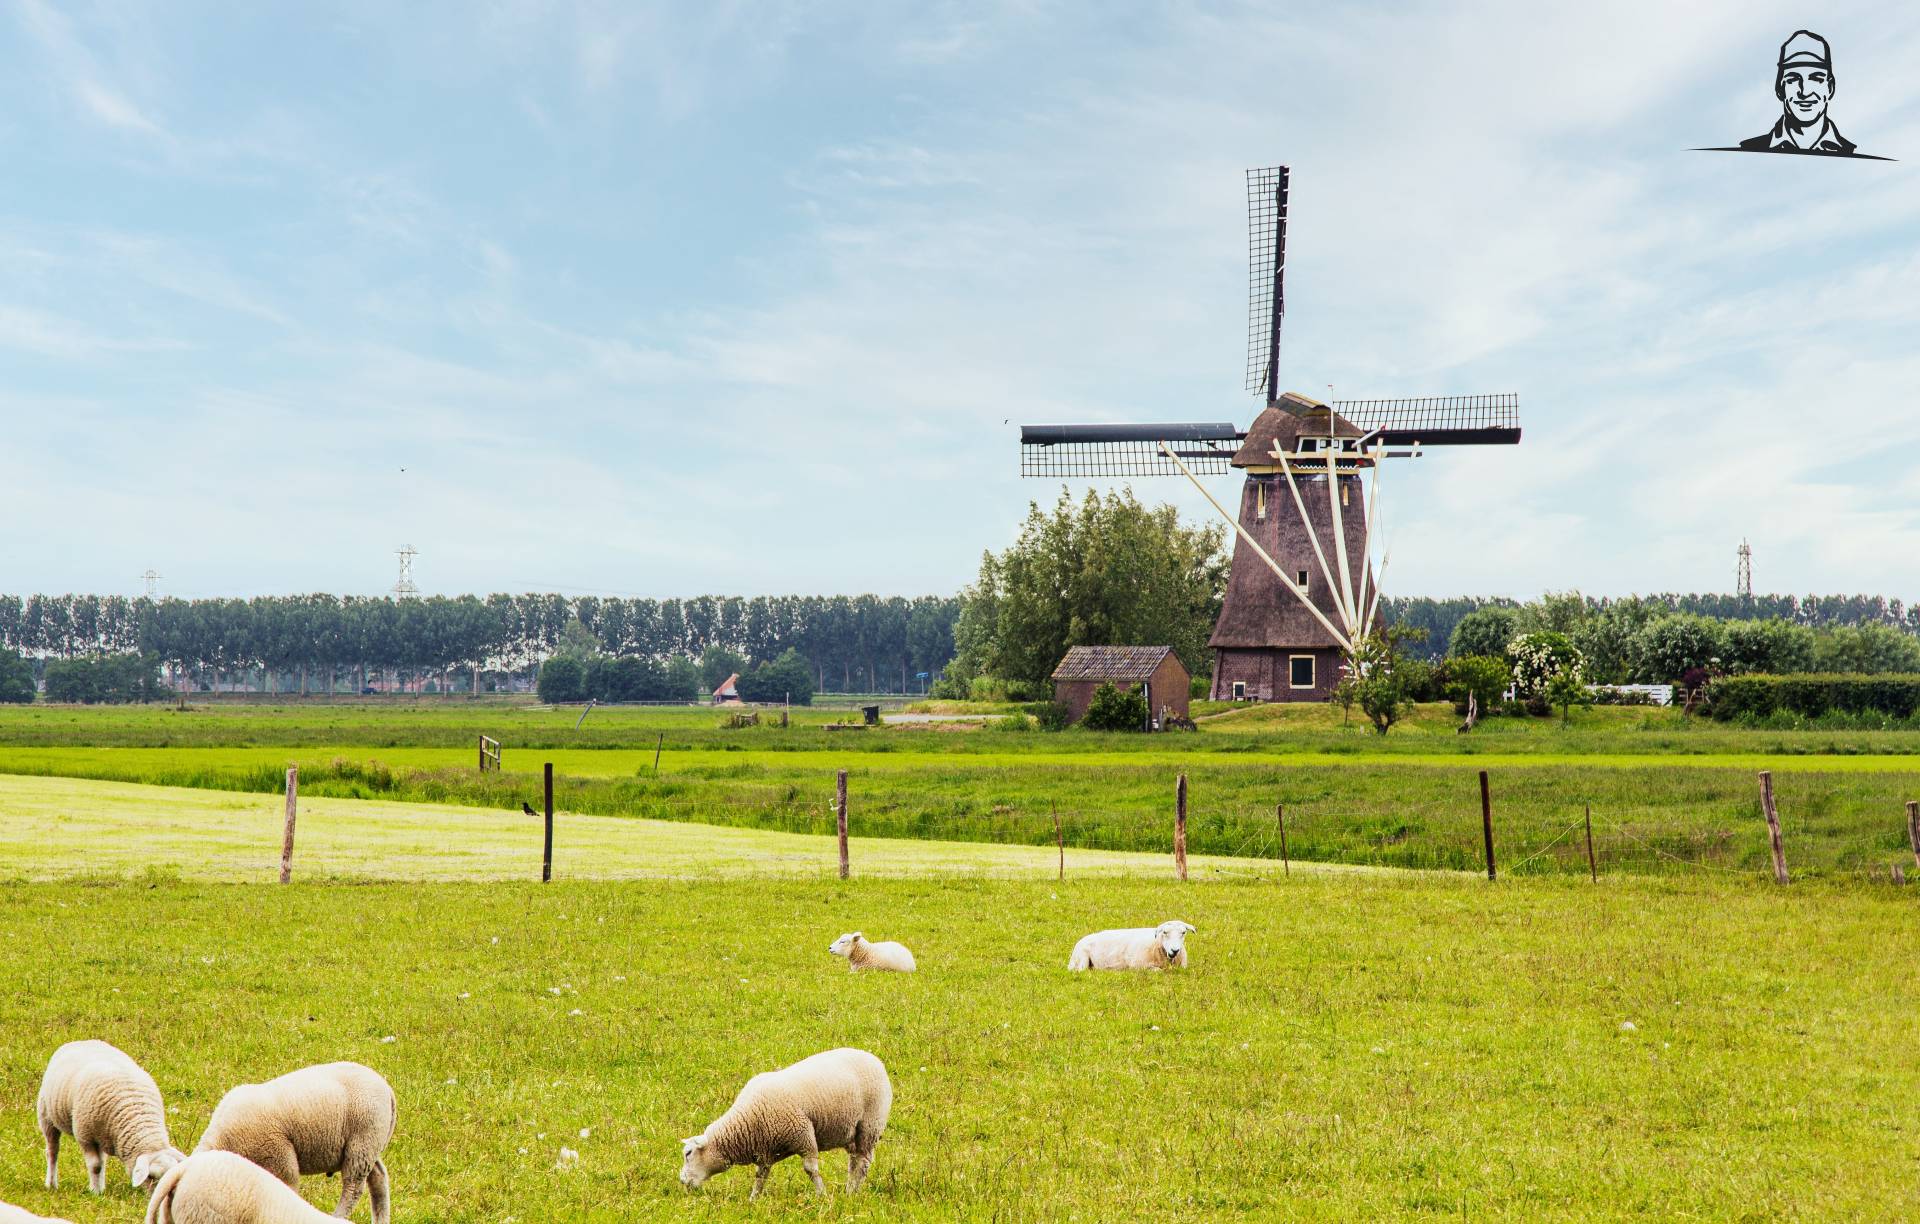 Prachtig Nederlands landschap Photo by E Mens on Unsplash